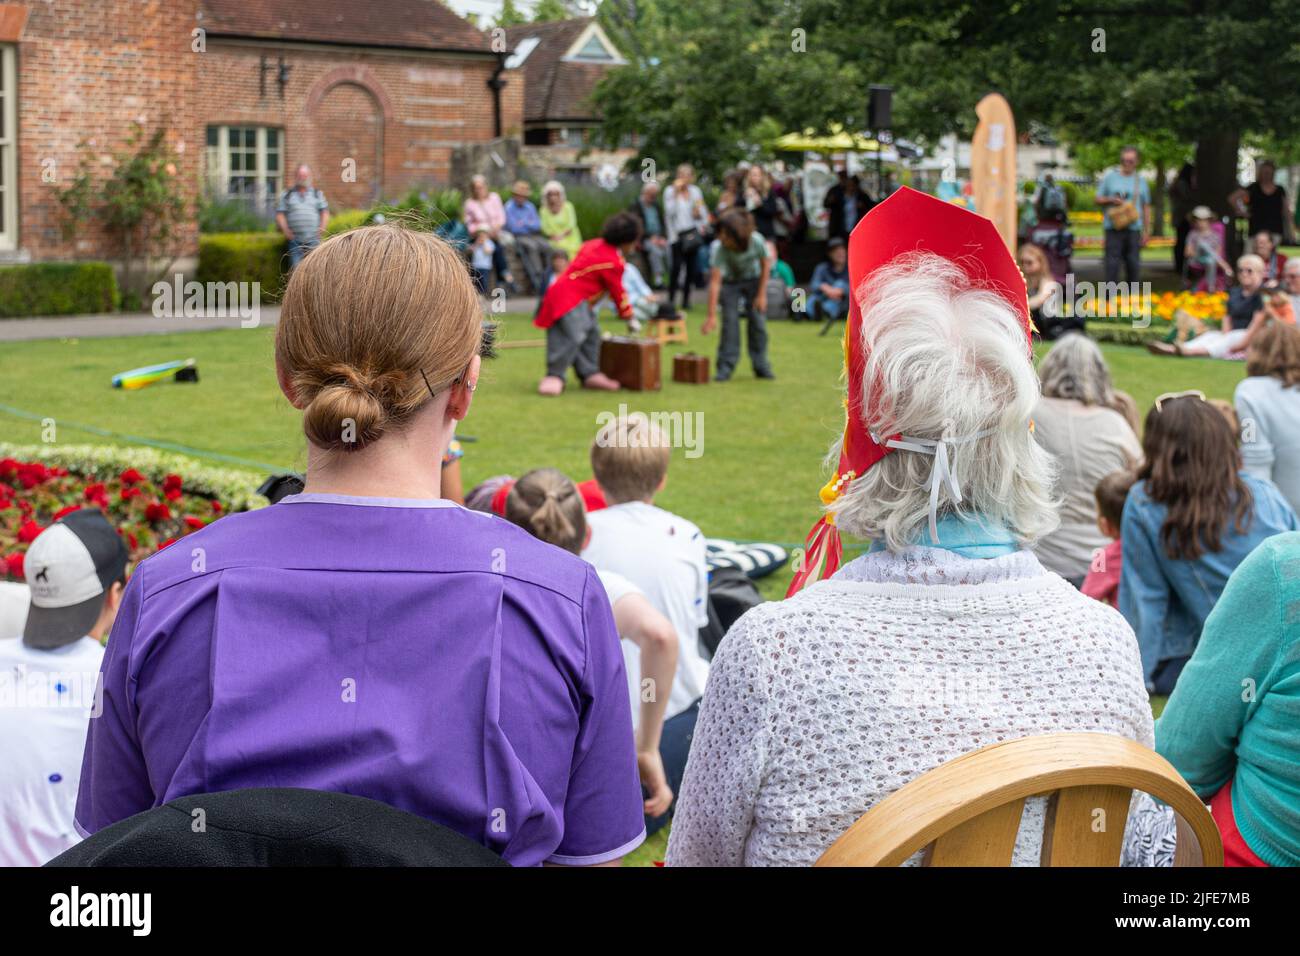 Pflegekraft sitzt mit einer älteren Dame in einem Park und beobachtet einen Clown-Entertainer, England, Großbritannien. Betreuer hilft alten Menschen bei sozialen Aktivitäten. Stockfoto